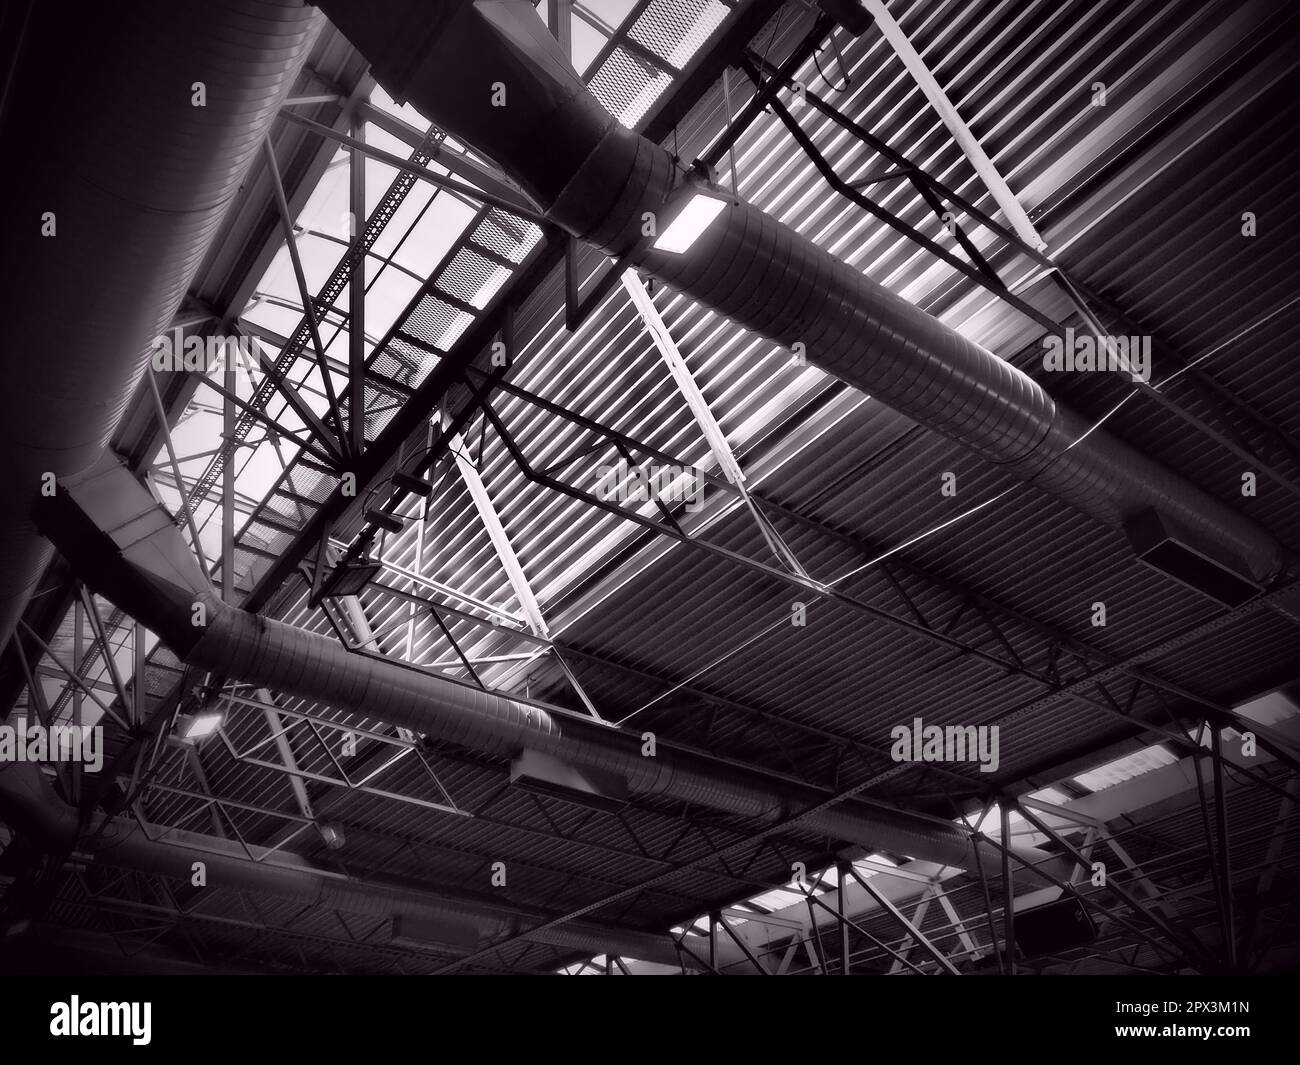 Das Dach eines Hangars, einer Produktionshalle oder einer Sporthalle. Metallkonstruktionen, Balken, Stützelemente. Lüftungsanlagen in großen Hallen und Räumen. Stockfoto